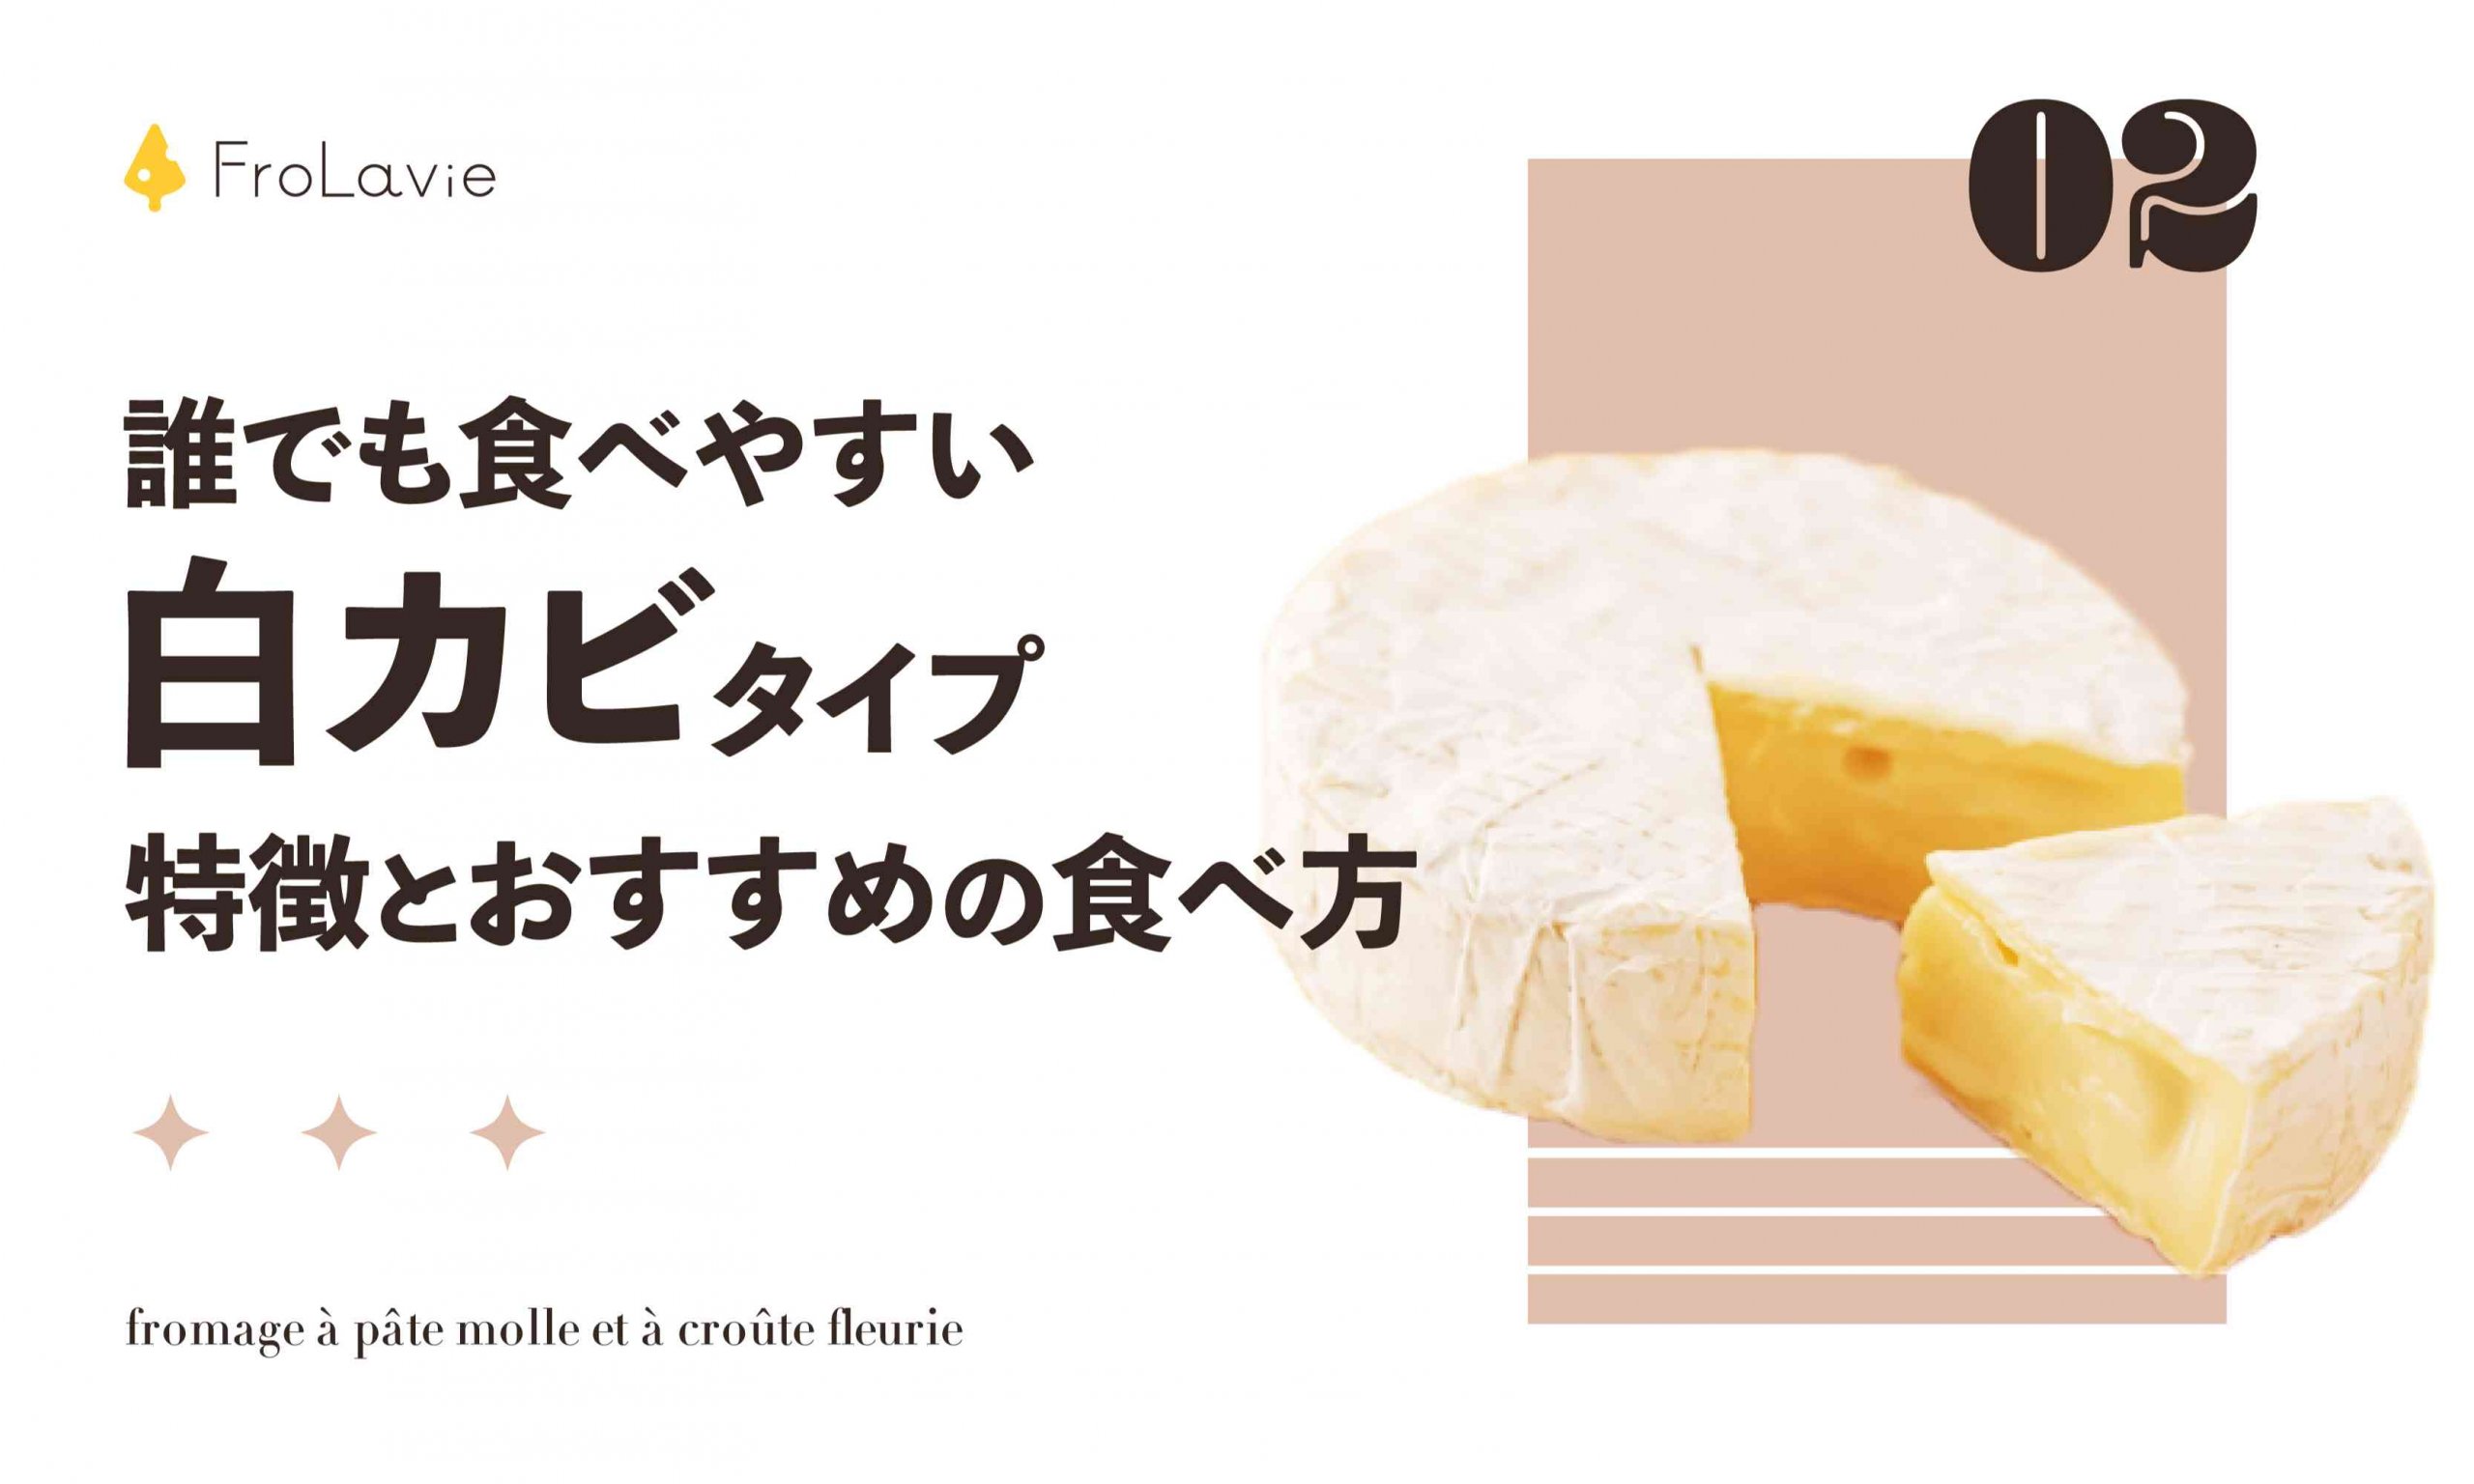 誰でも食べやすい 白カビタイプの特徴と おすすめの食べ方 白カビチーズ Frolavie フローラビ チーズのある豊かな生活を